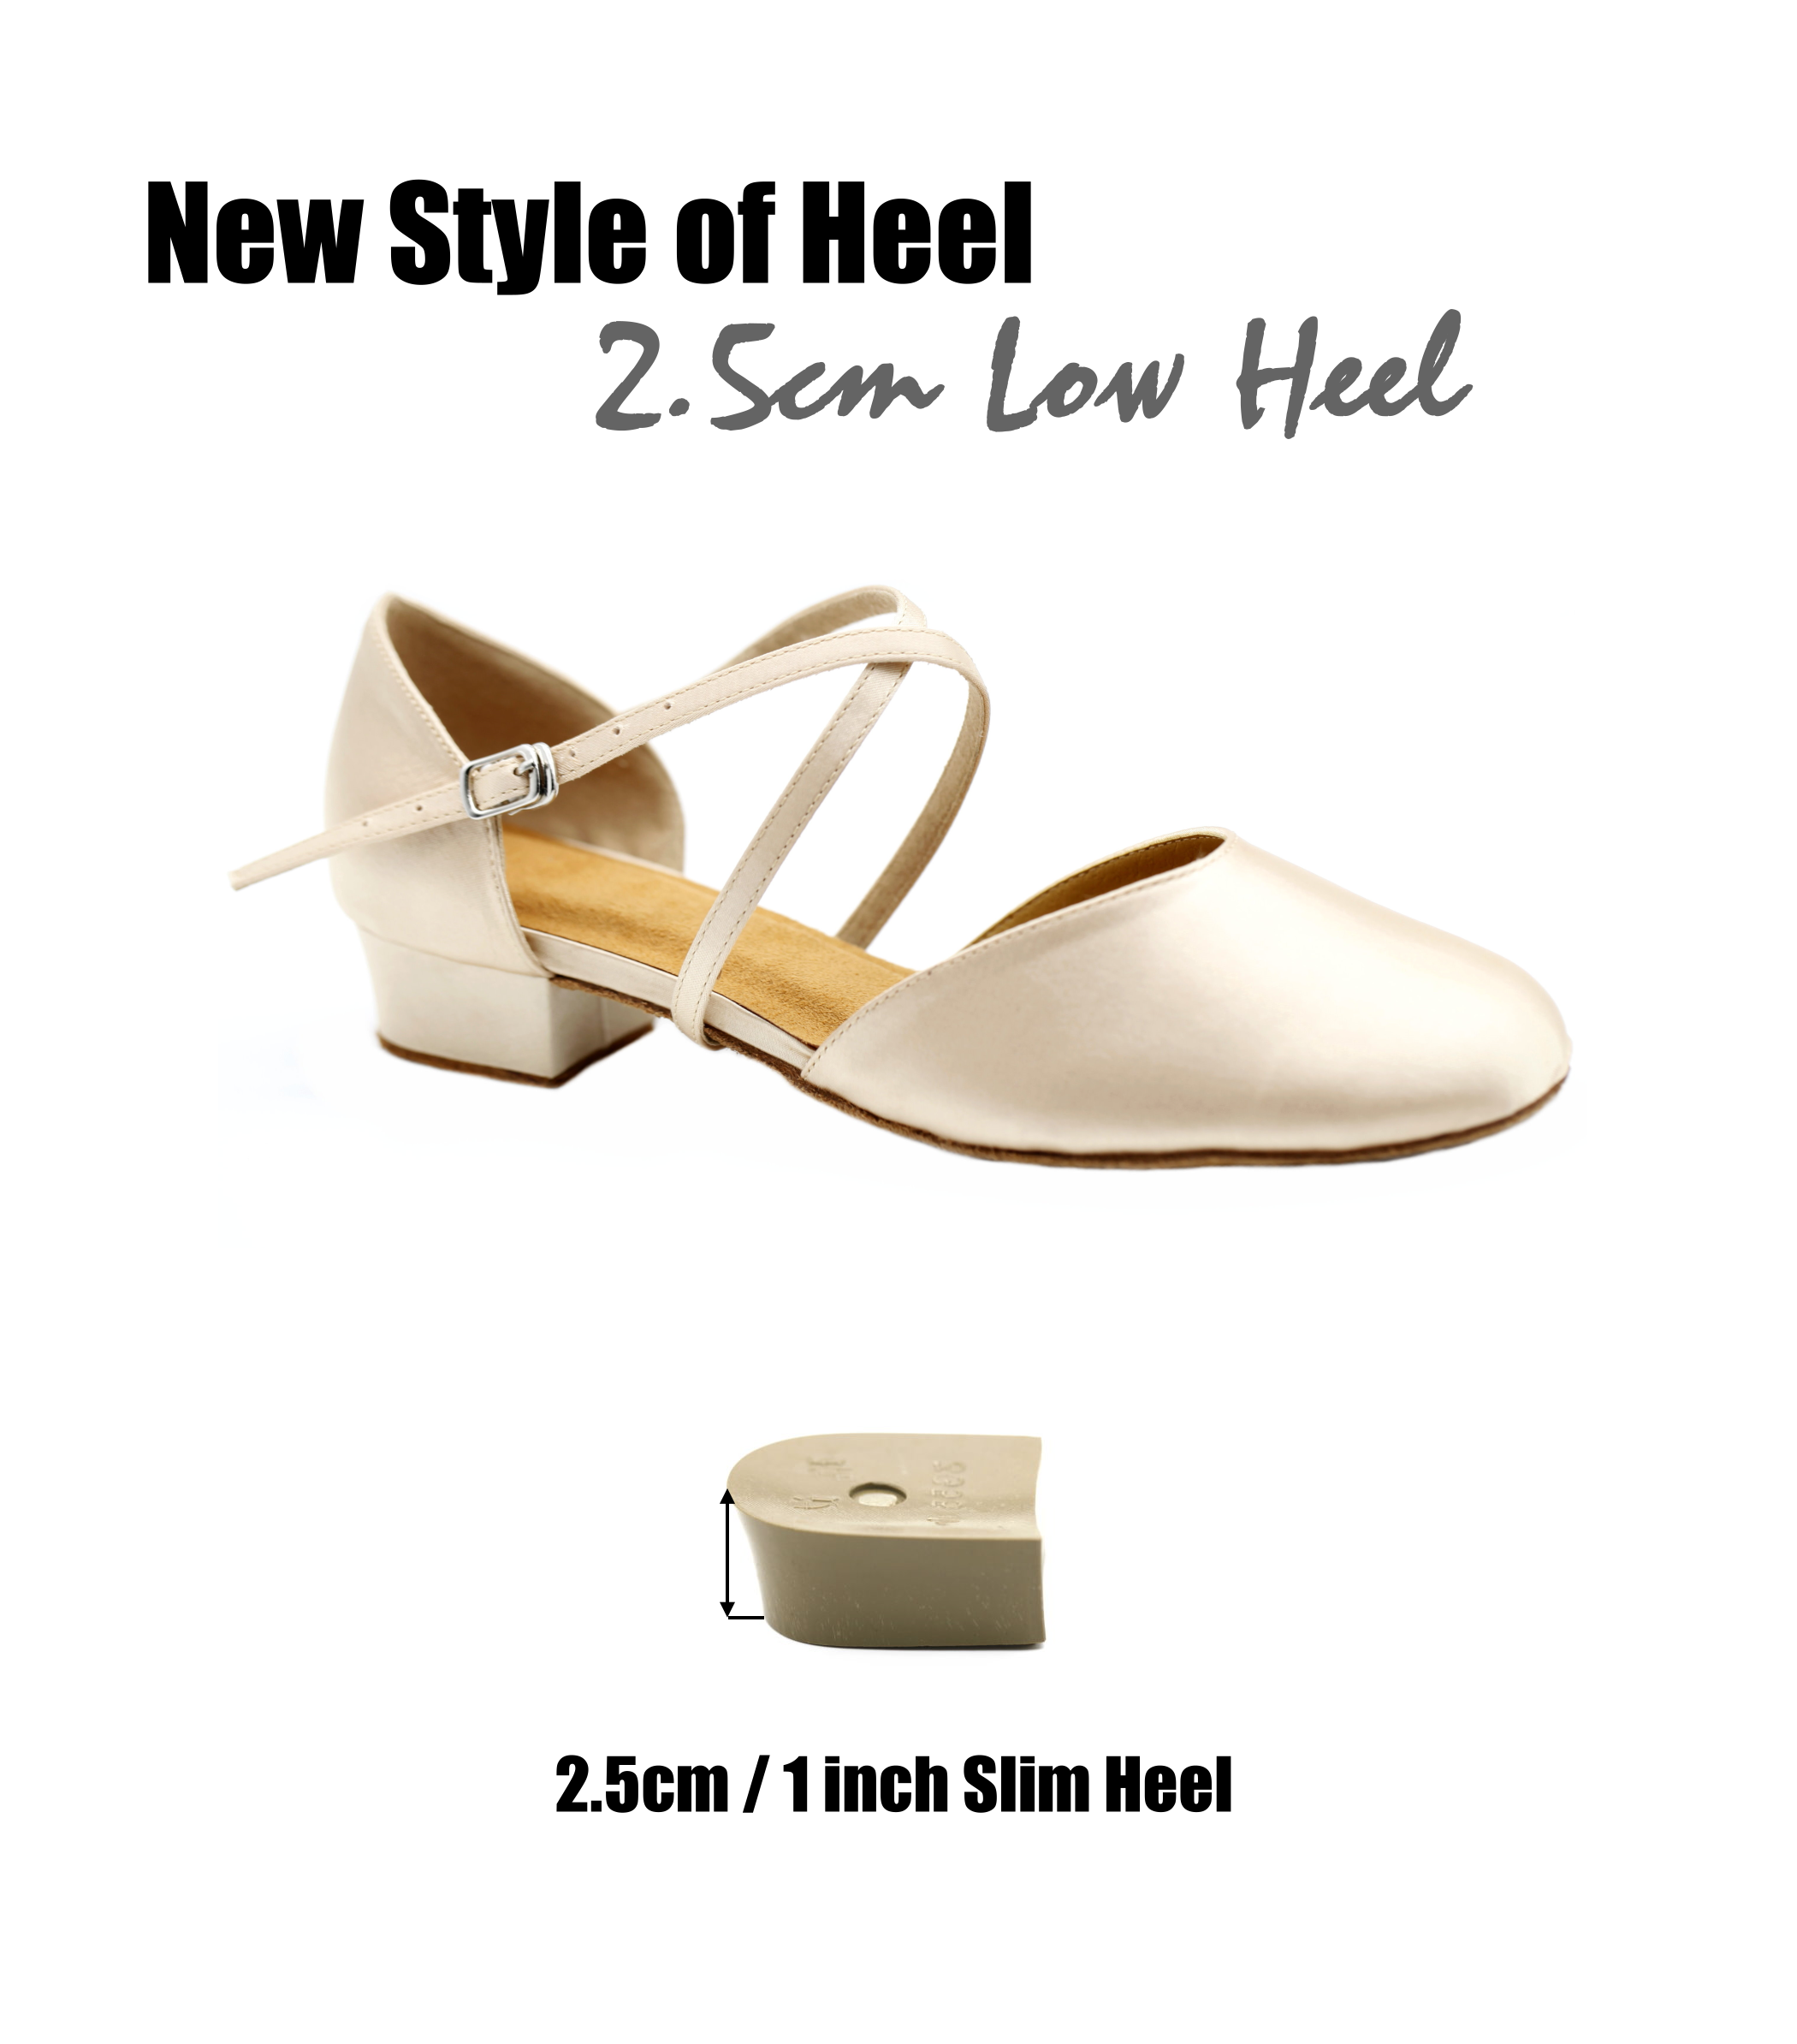 1 inch heel dance shoes